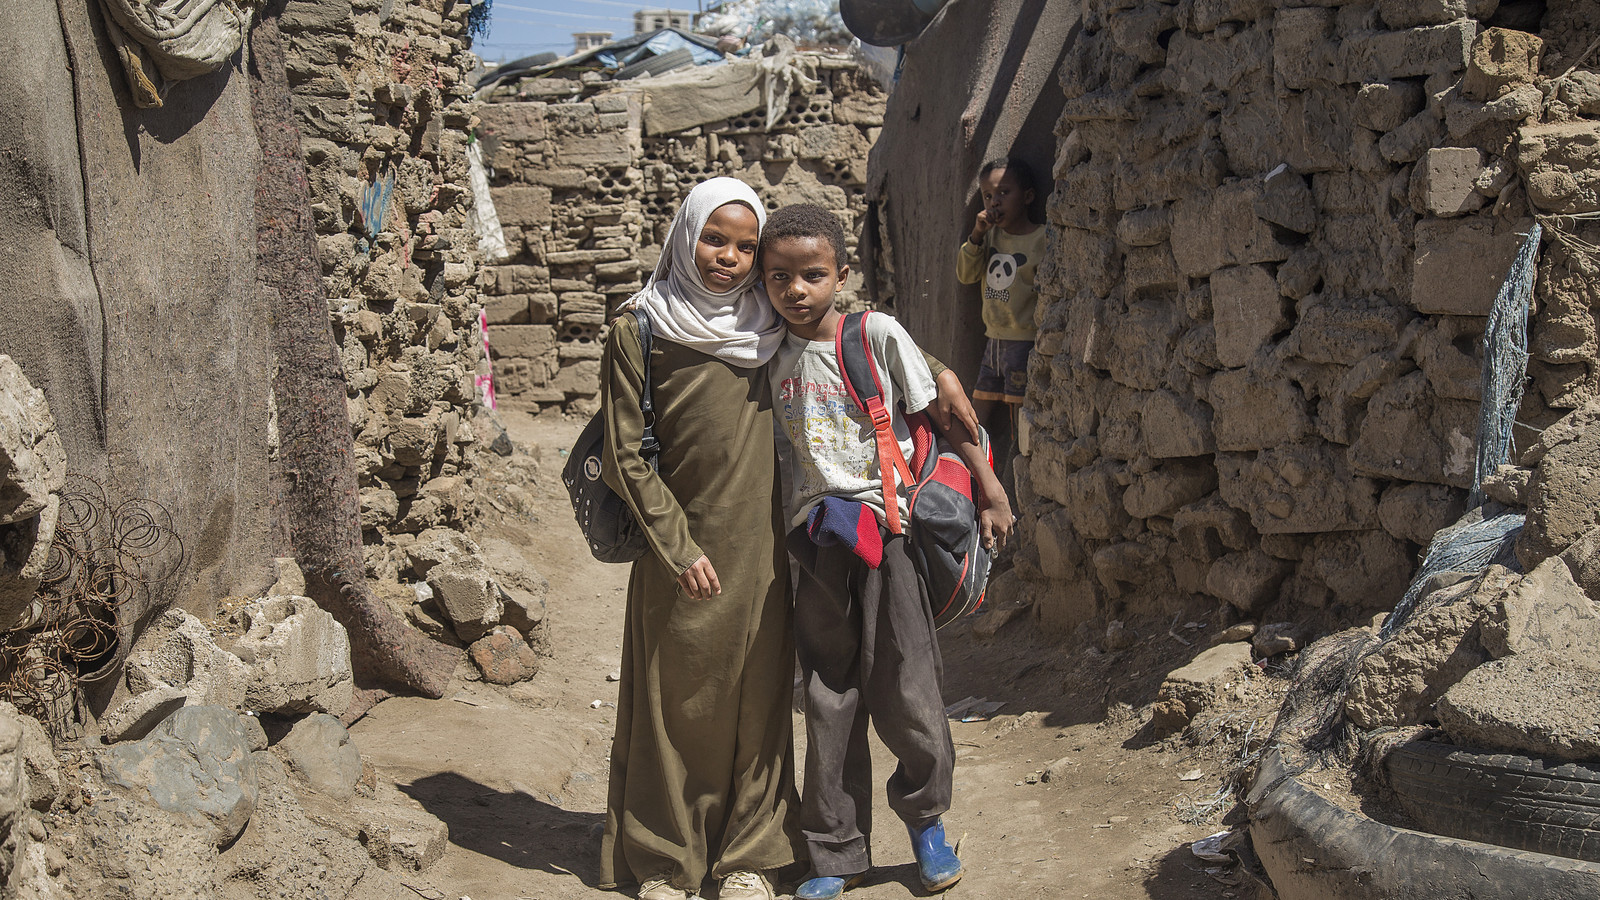 Children going to school in Yemen.